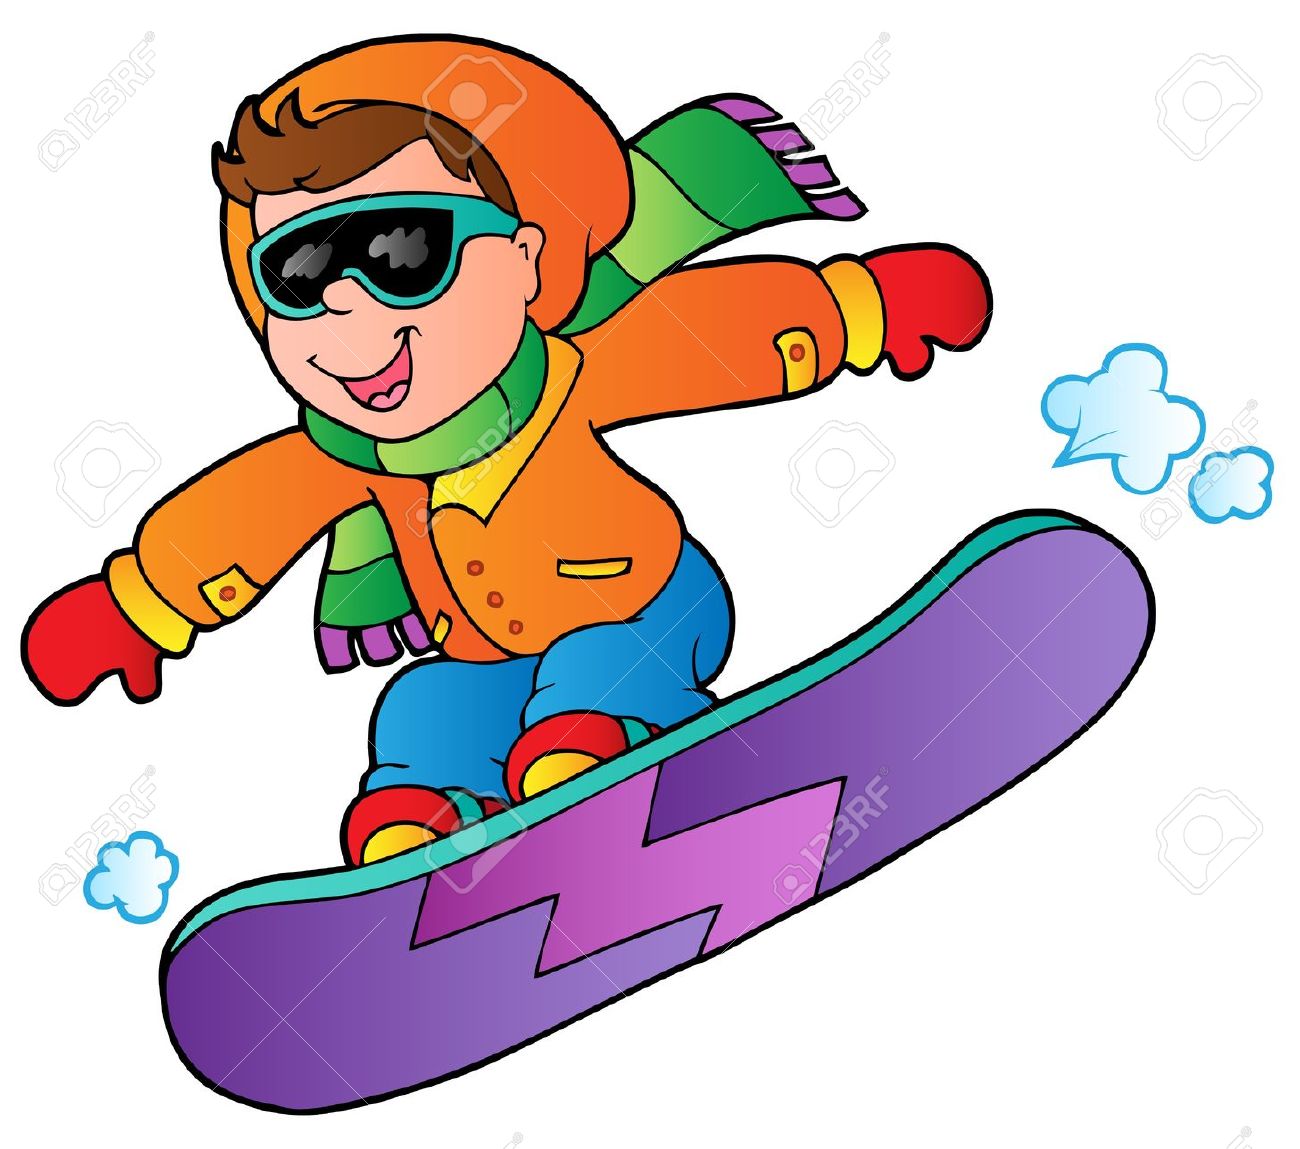 snowboarder: snowboarding